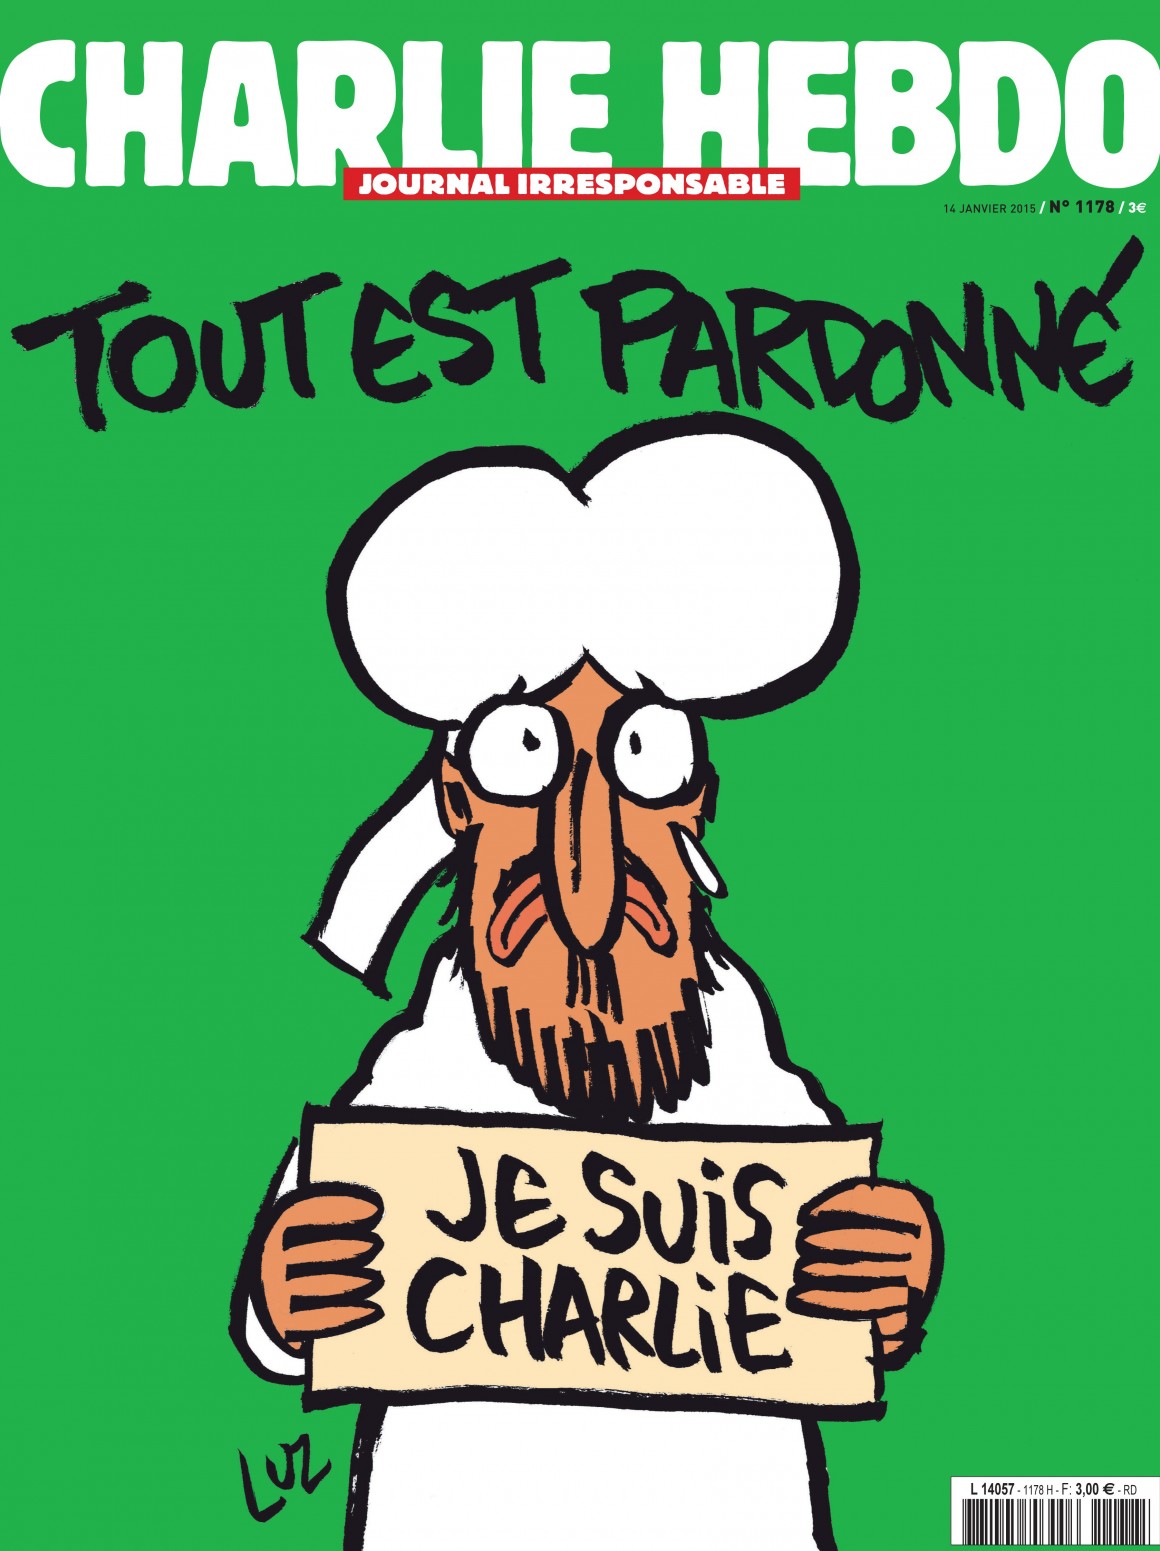 Allt er fyrirgefið. Fyrsta forsíða Charlie Hebdo eftir árásina sýnir samstöðu Múhameds með blaðinu í gegnum tvíkrossinn #JeSuisCharlie. Það er ekki árás á tjáningafrelsið að gagnrýna birtingu hennar, né er það árás að gagnrýna það að birta hana ekki. reykjavík vikublað er veraldlegt blað og af þeim sökum er forsíðan birt. Blaðið vill um leið vera málsvari allra. Það er eðilegt að gagnrýna linnulaust tillitsleysi í garð jarðar- setts hóps, sem einnig verður ítrekað fyrir árásum stjórnmálamanna. Slík gagnrýni er hvorki árás á tjáningarfrelsi né vestræn gildi, heldur þvert á móti æskileg og verðmæt.